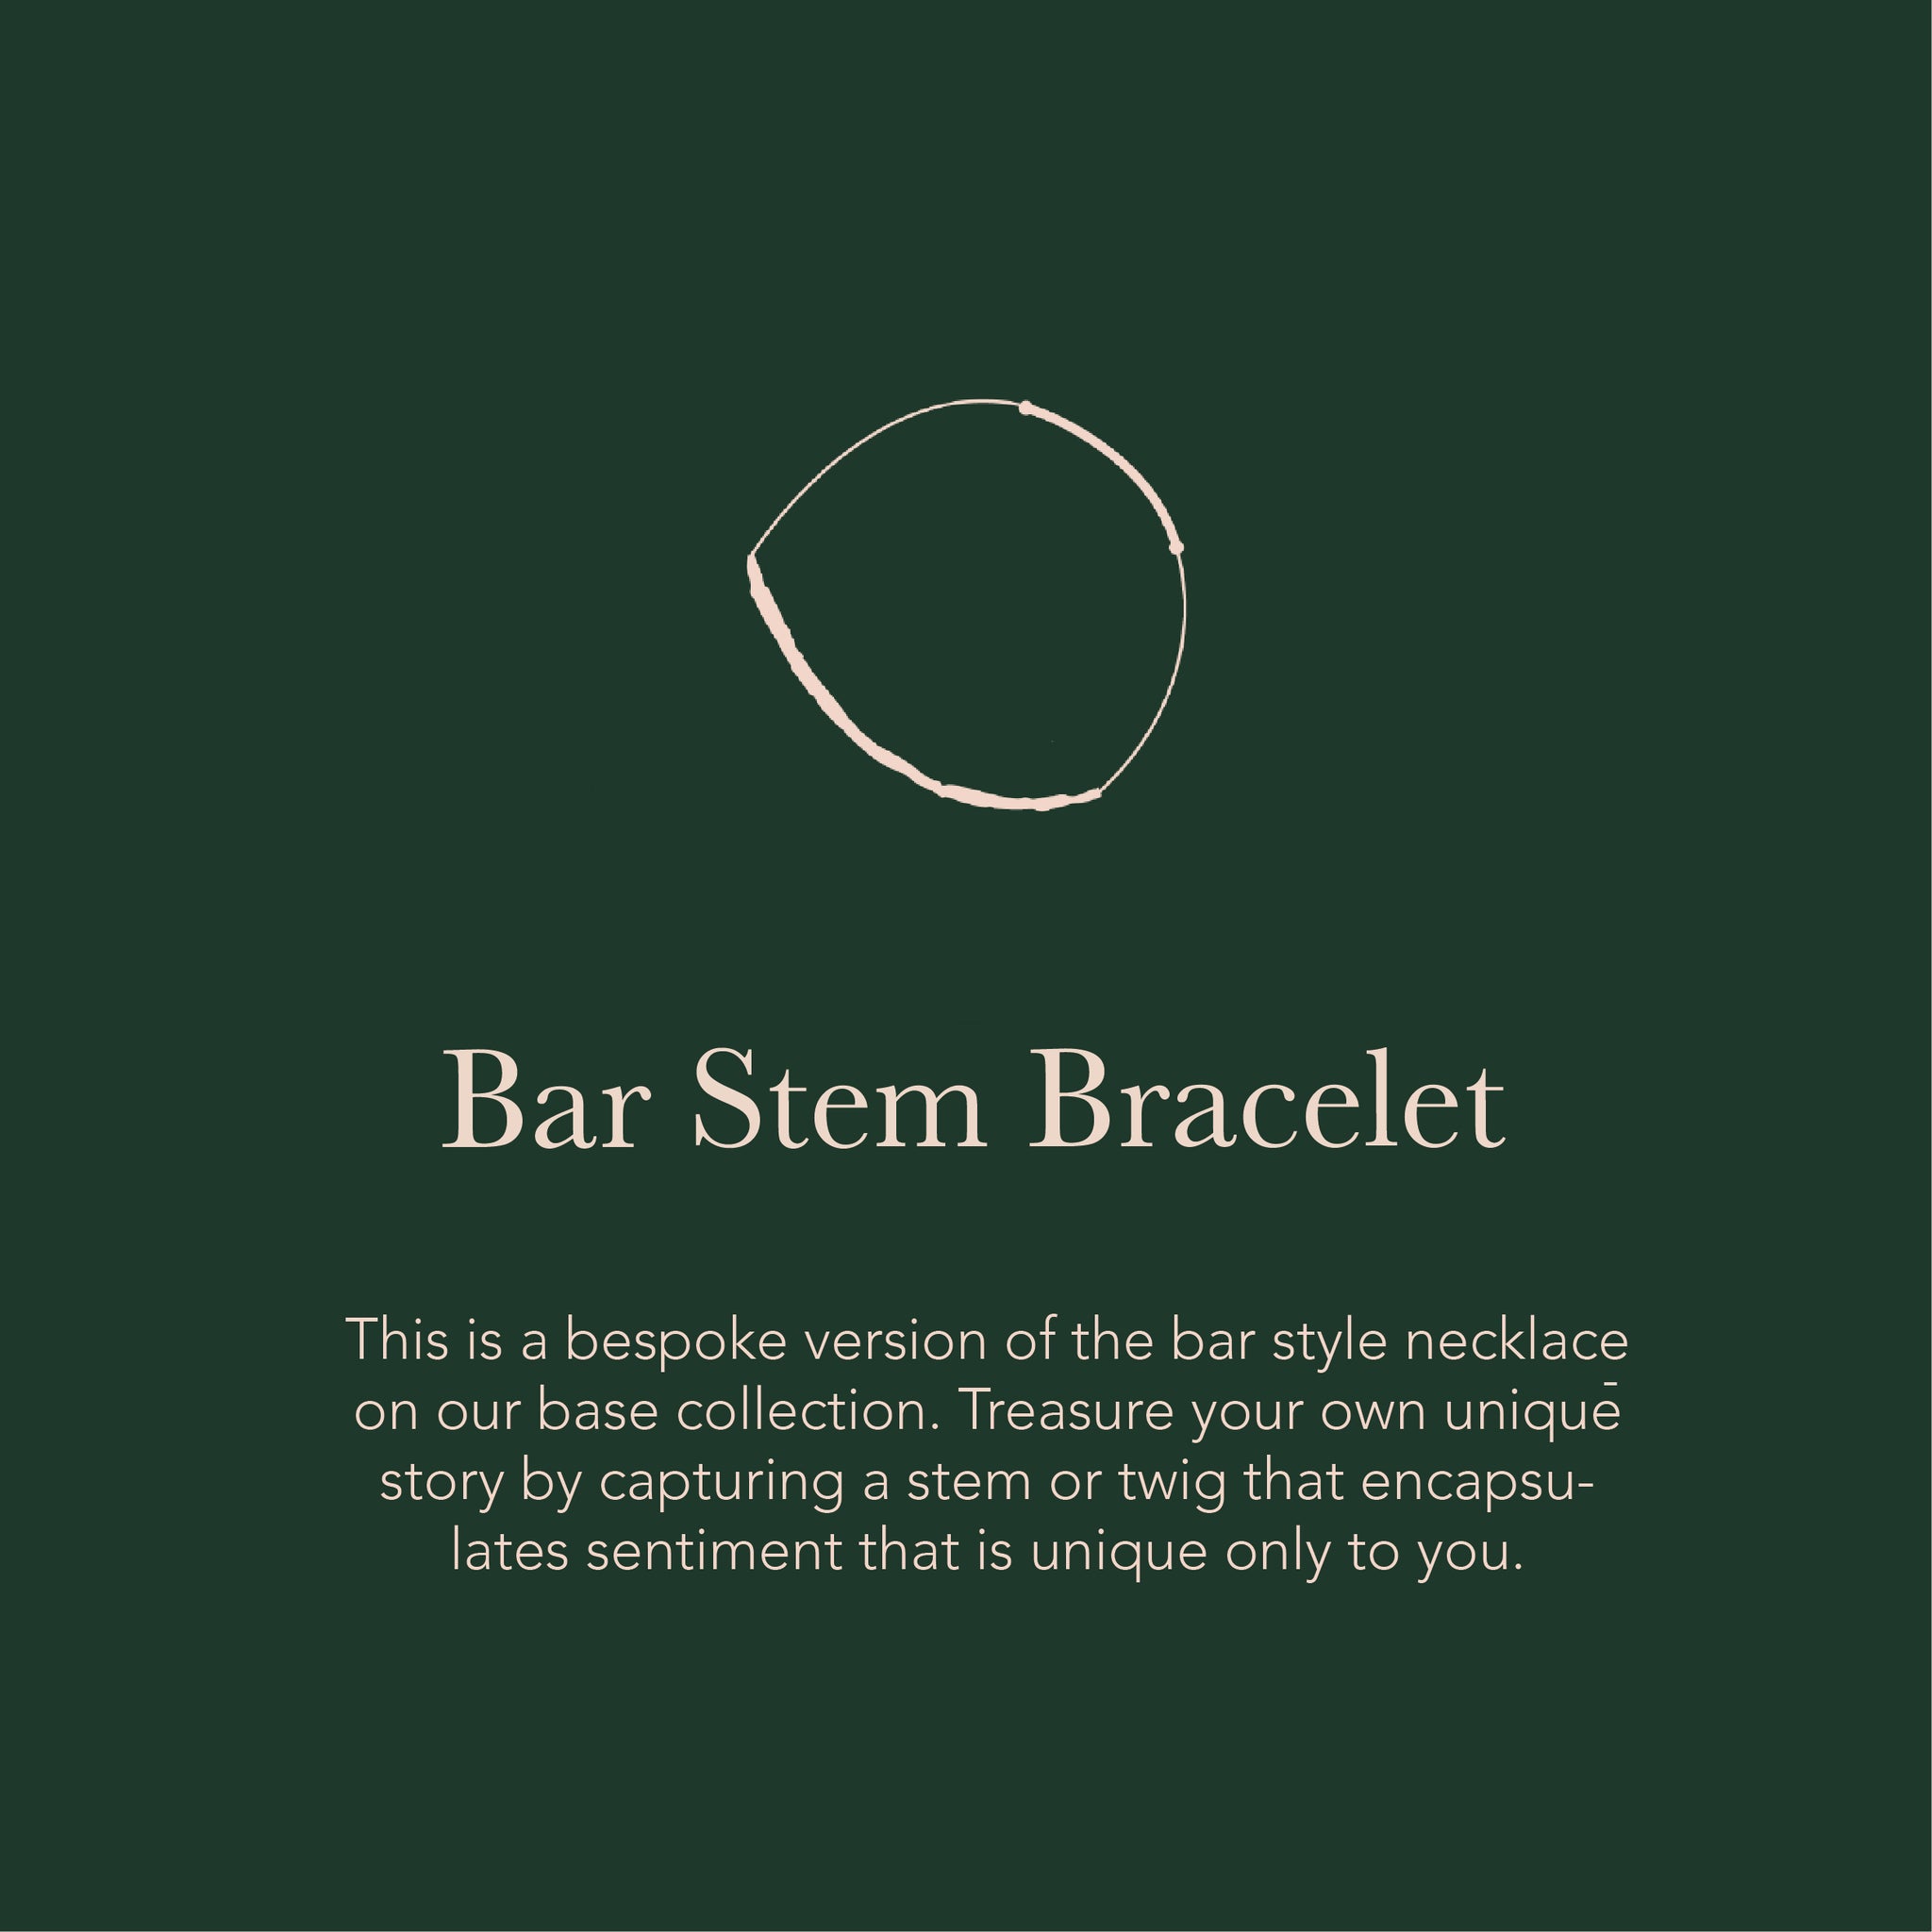 Bar Stem Bracelet - Create